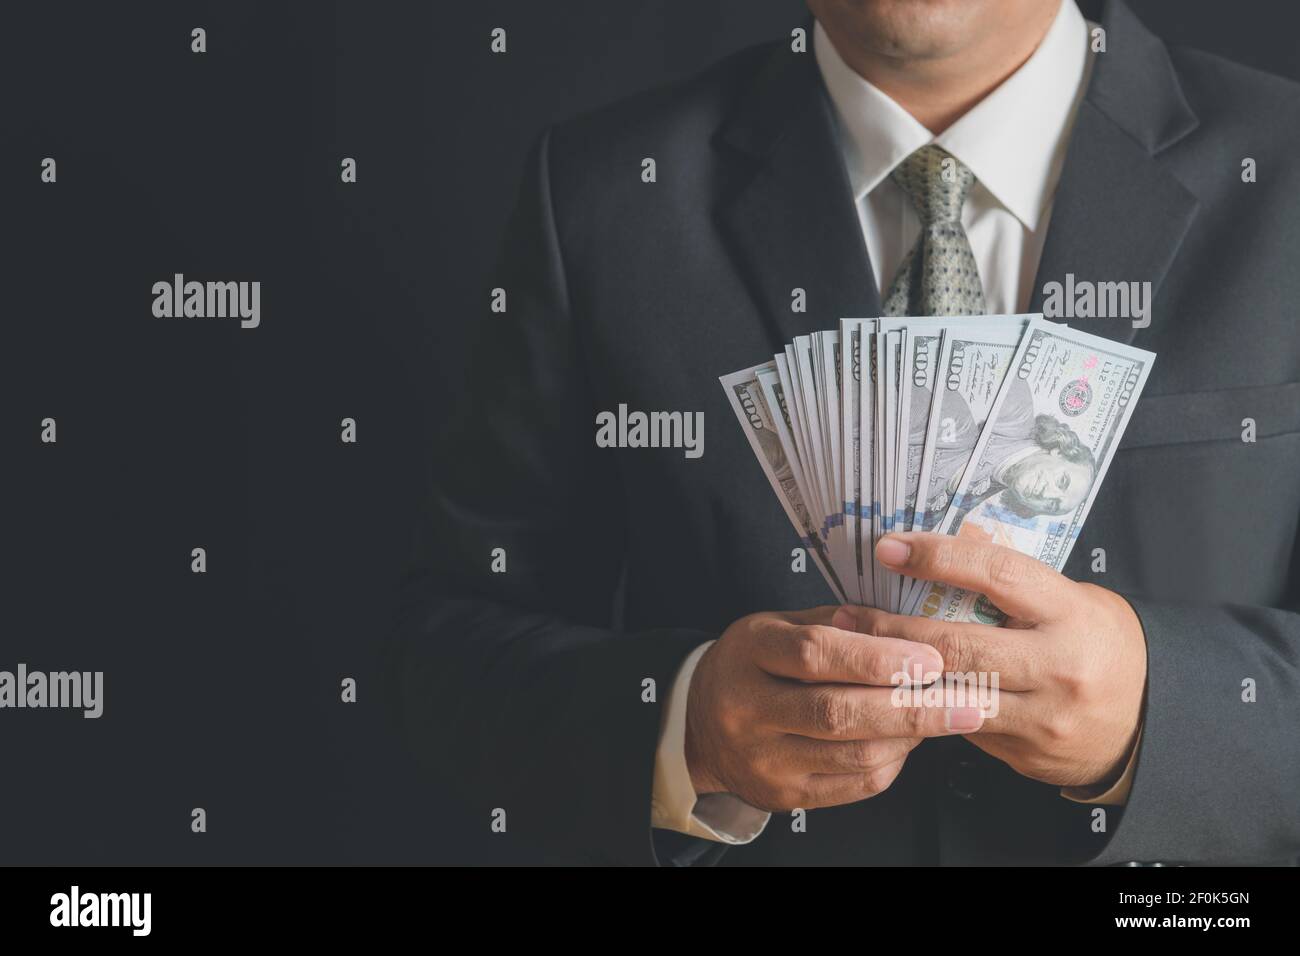 Homme d'affaires portant un costume et une cravate tenant de l'argent à la main sur fond noir, des billets en dollars américains (USD) - investissement, succès et affaires rentables c Banque D'Images